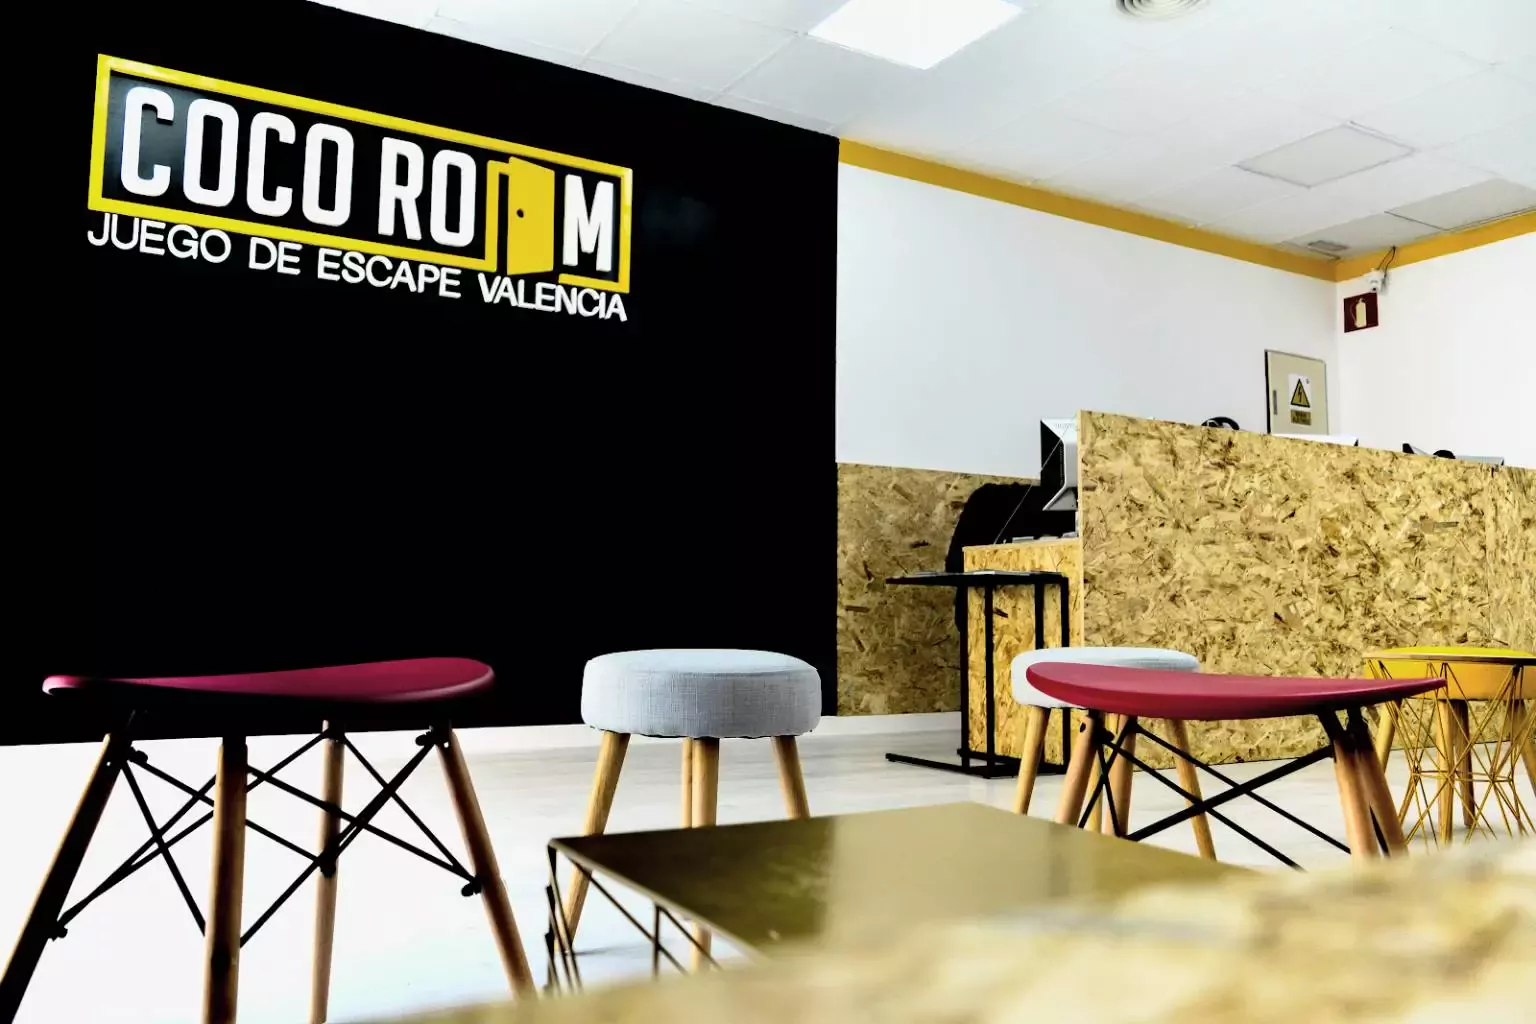 5. Escape Room  - Coco Room Valencia